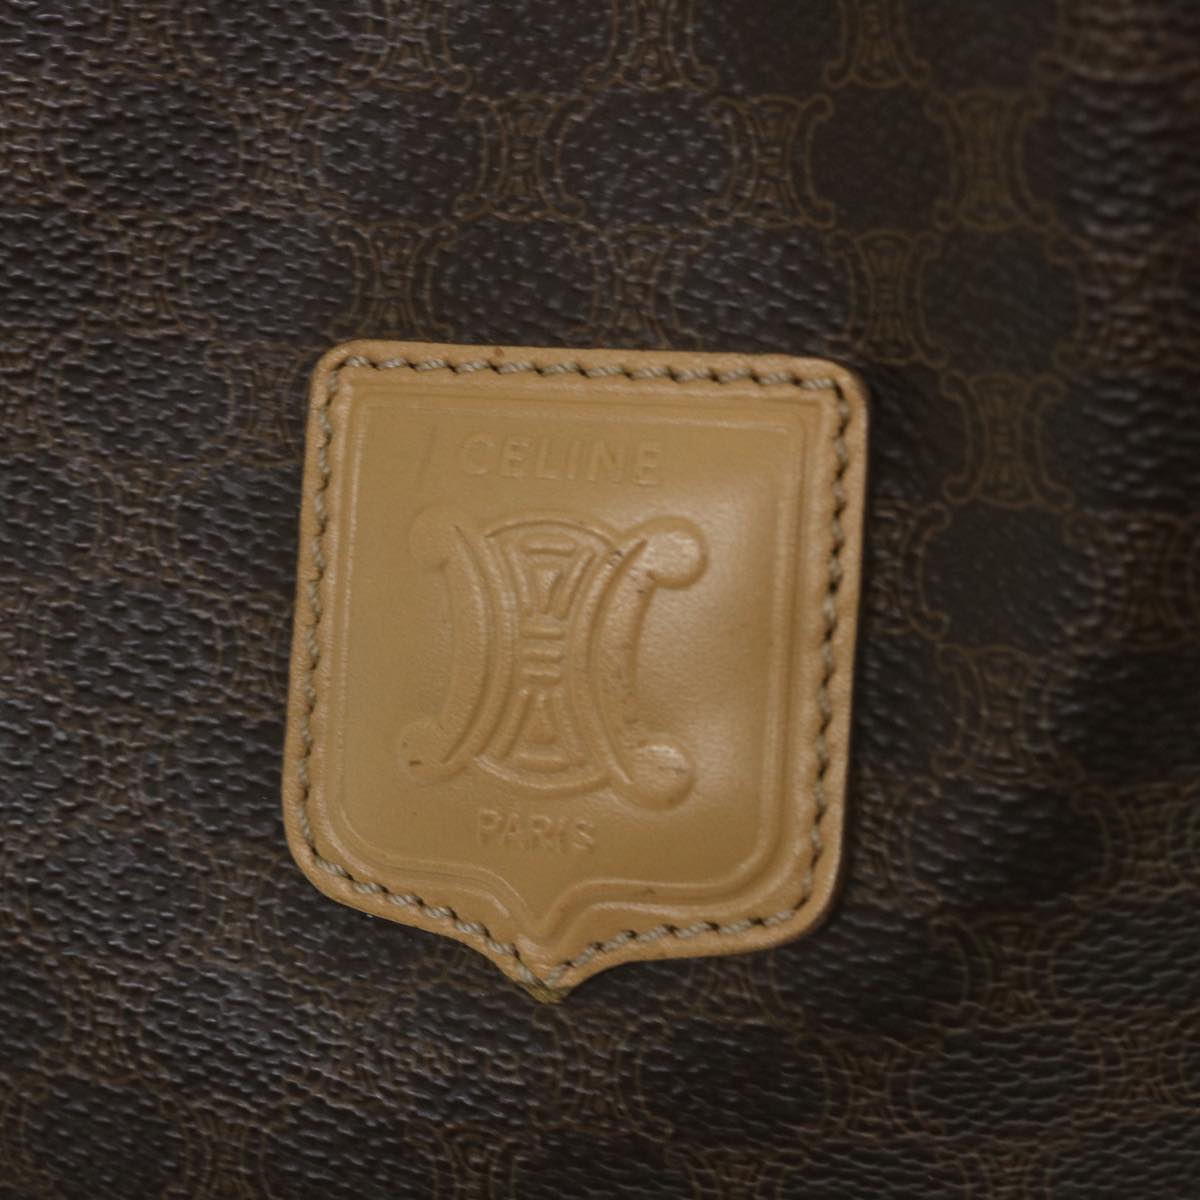 CELINE Macadam Canvas Shoulder Bag PVC Leather Brown Auth ar10788